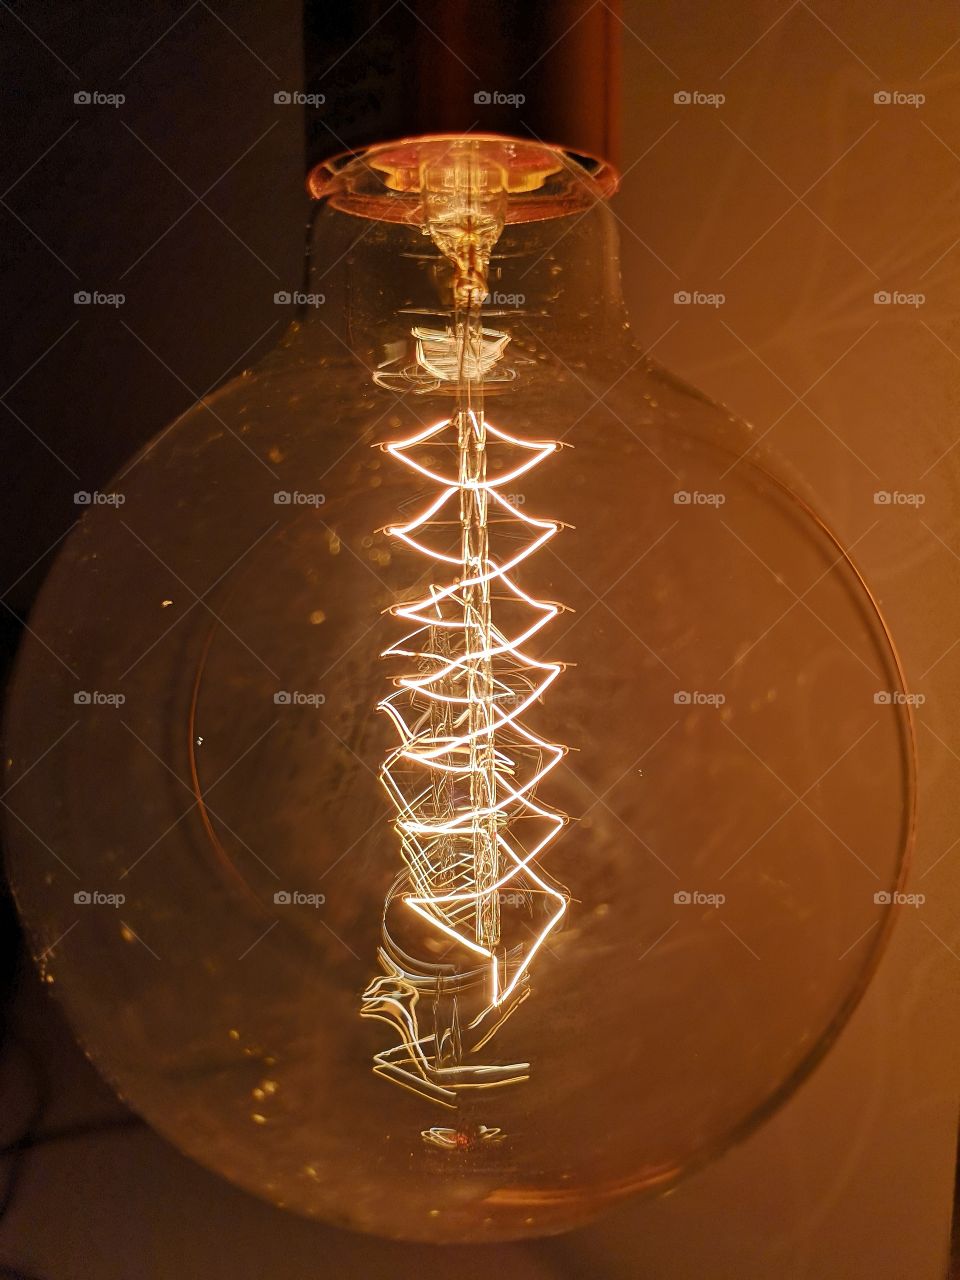 Inside a big light bulb